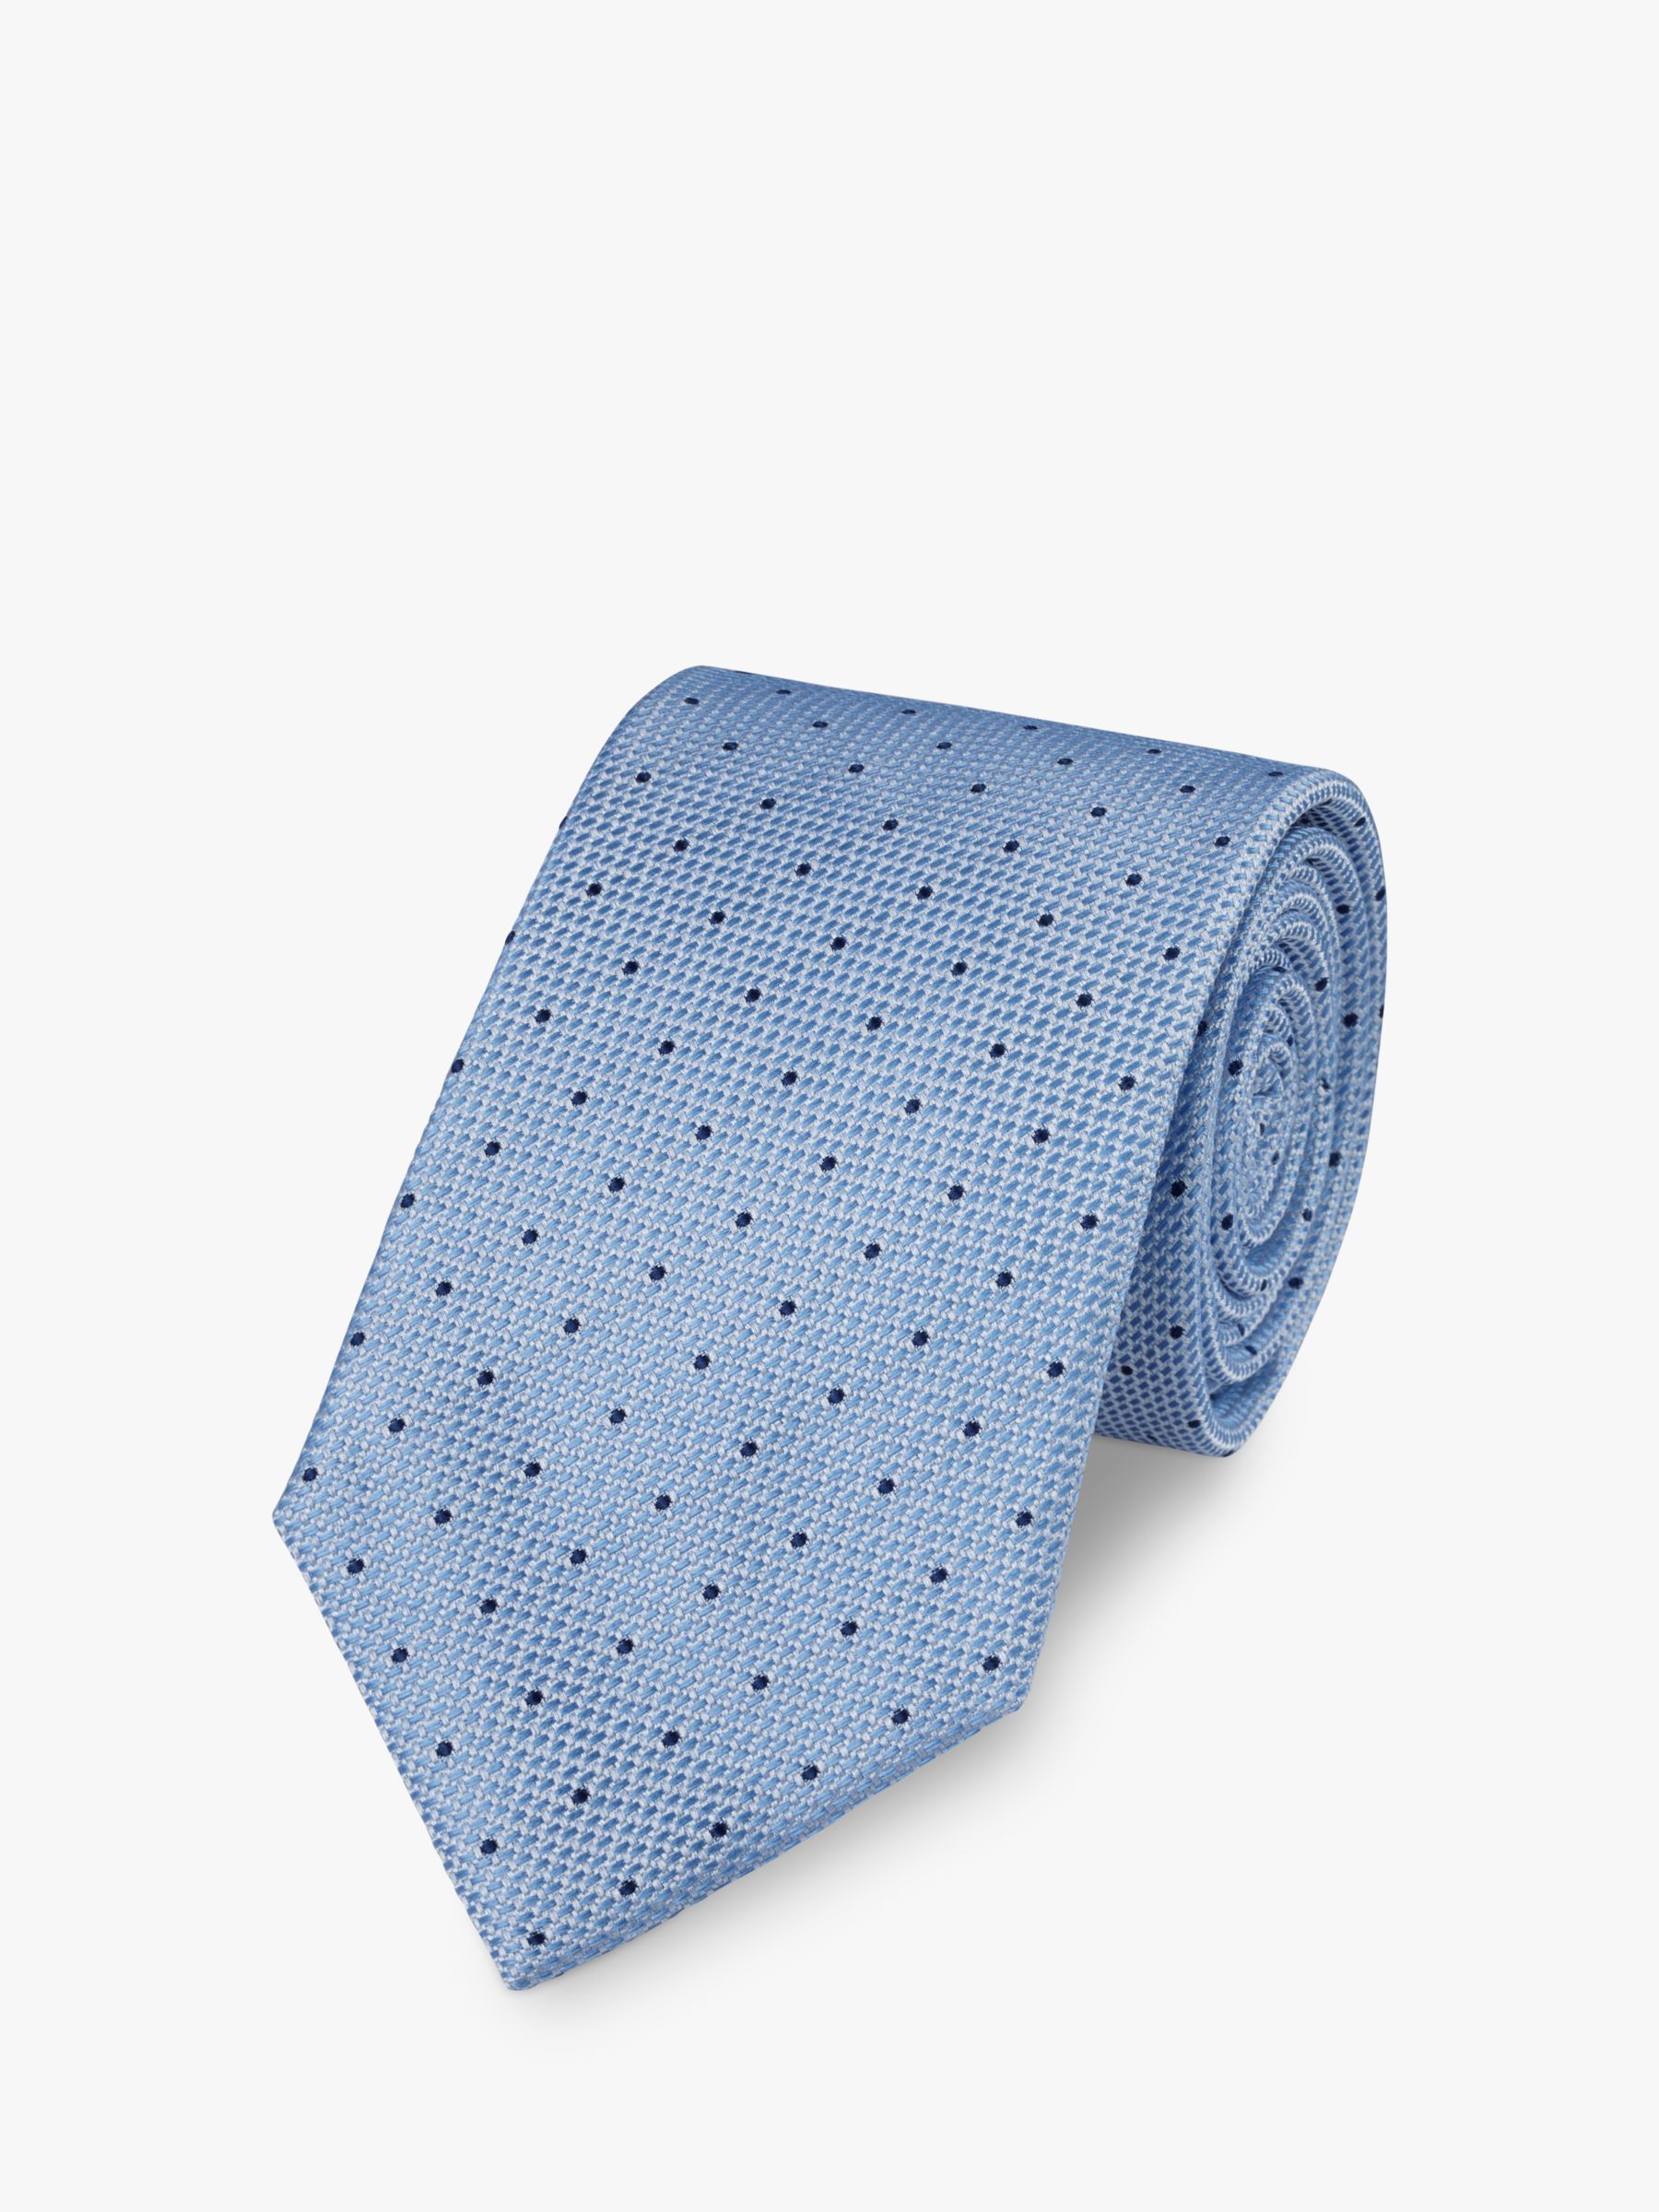 Charles Tyrwhitt Dot Print Stain Resistant Silk Tie, Sky Blue at John ...